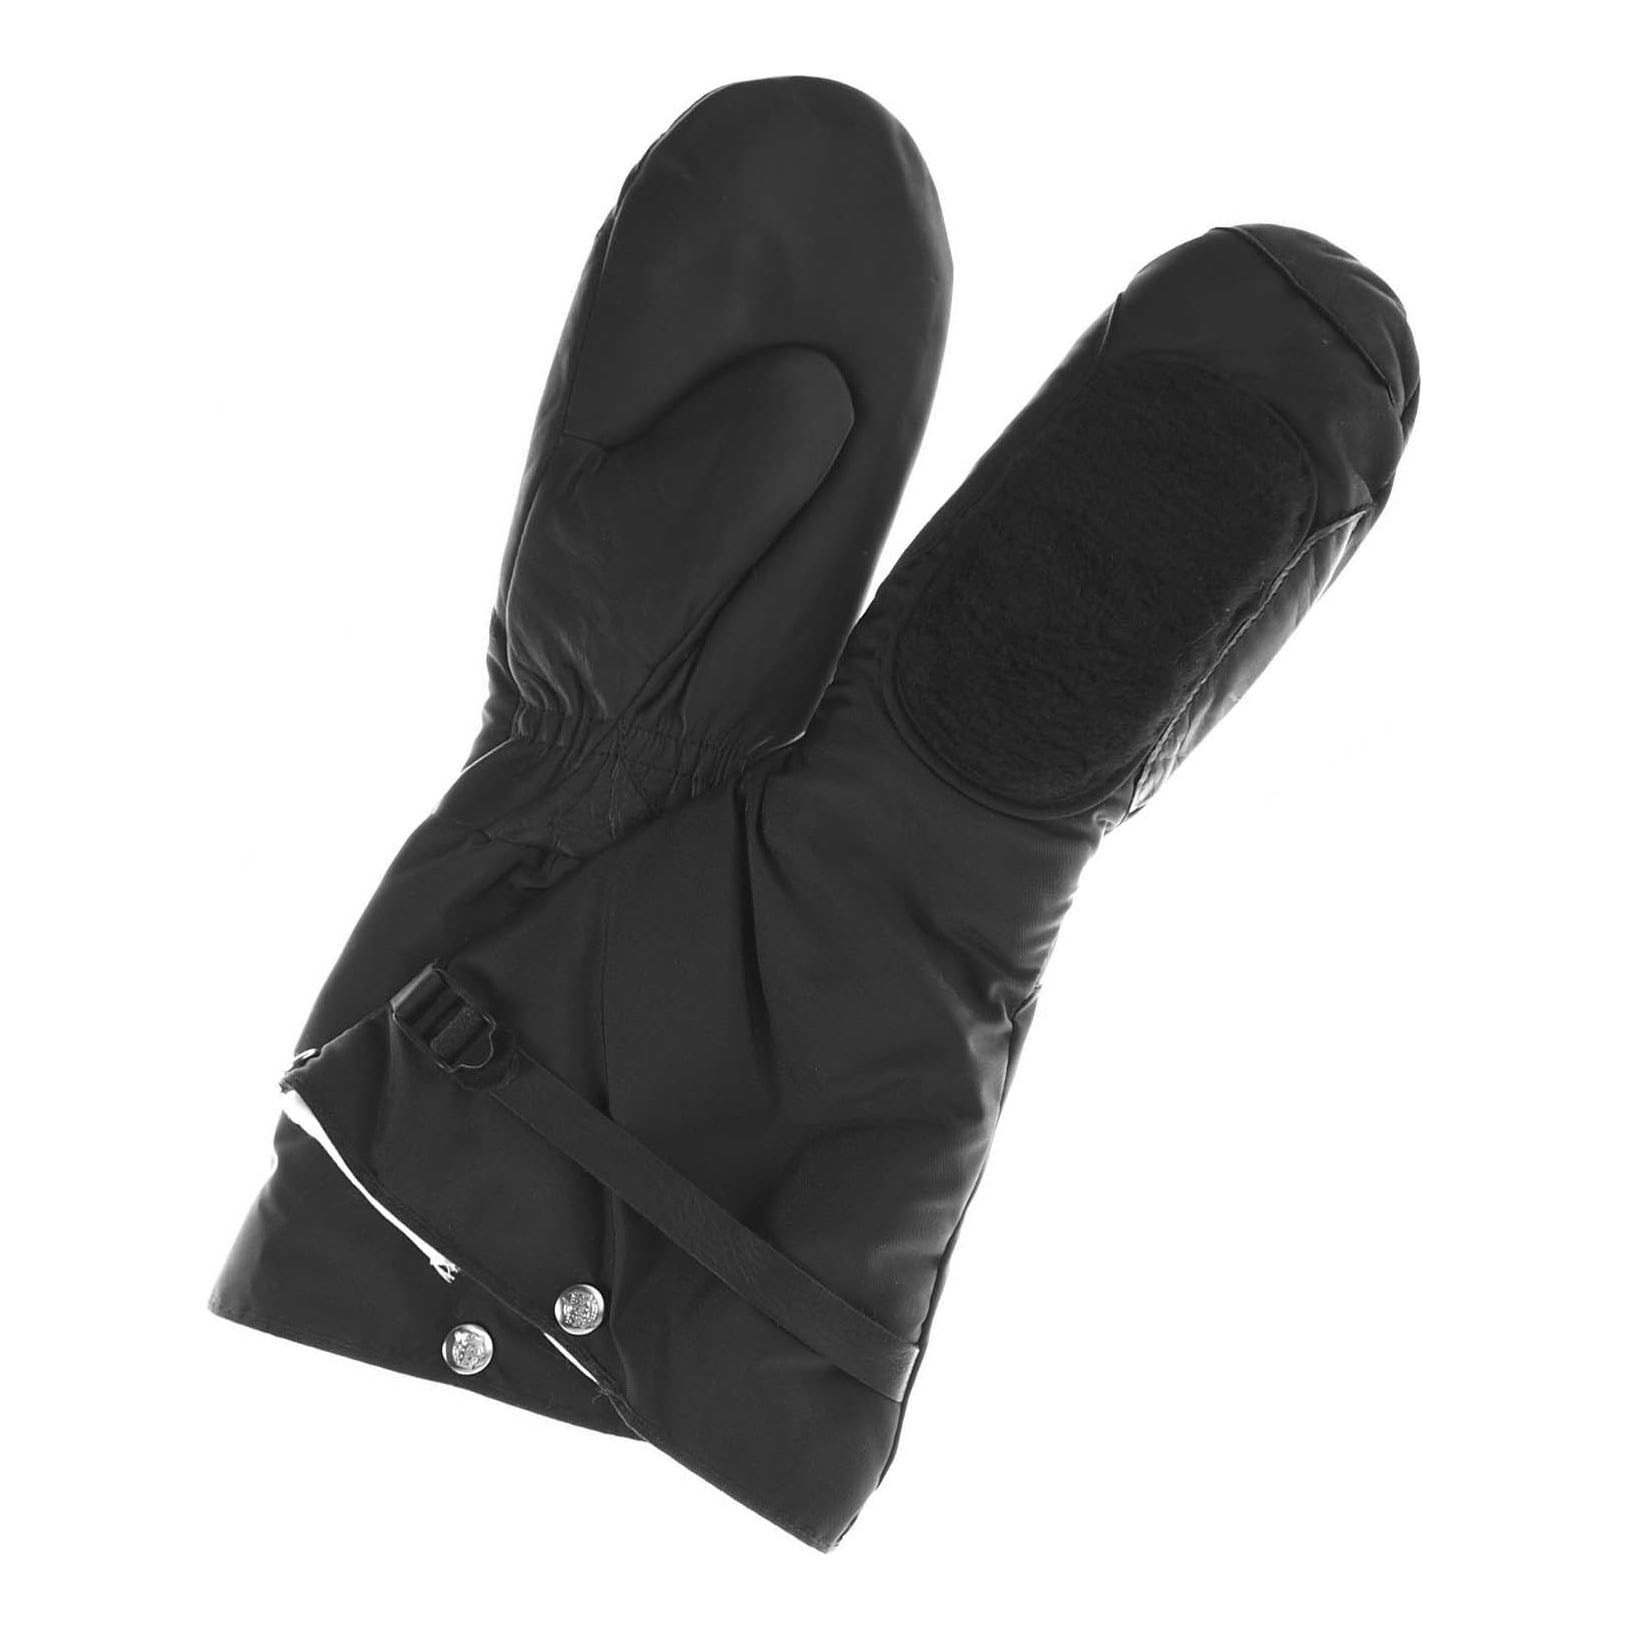 Raber Glove Arctic 1 Gauntlet Mitts